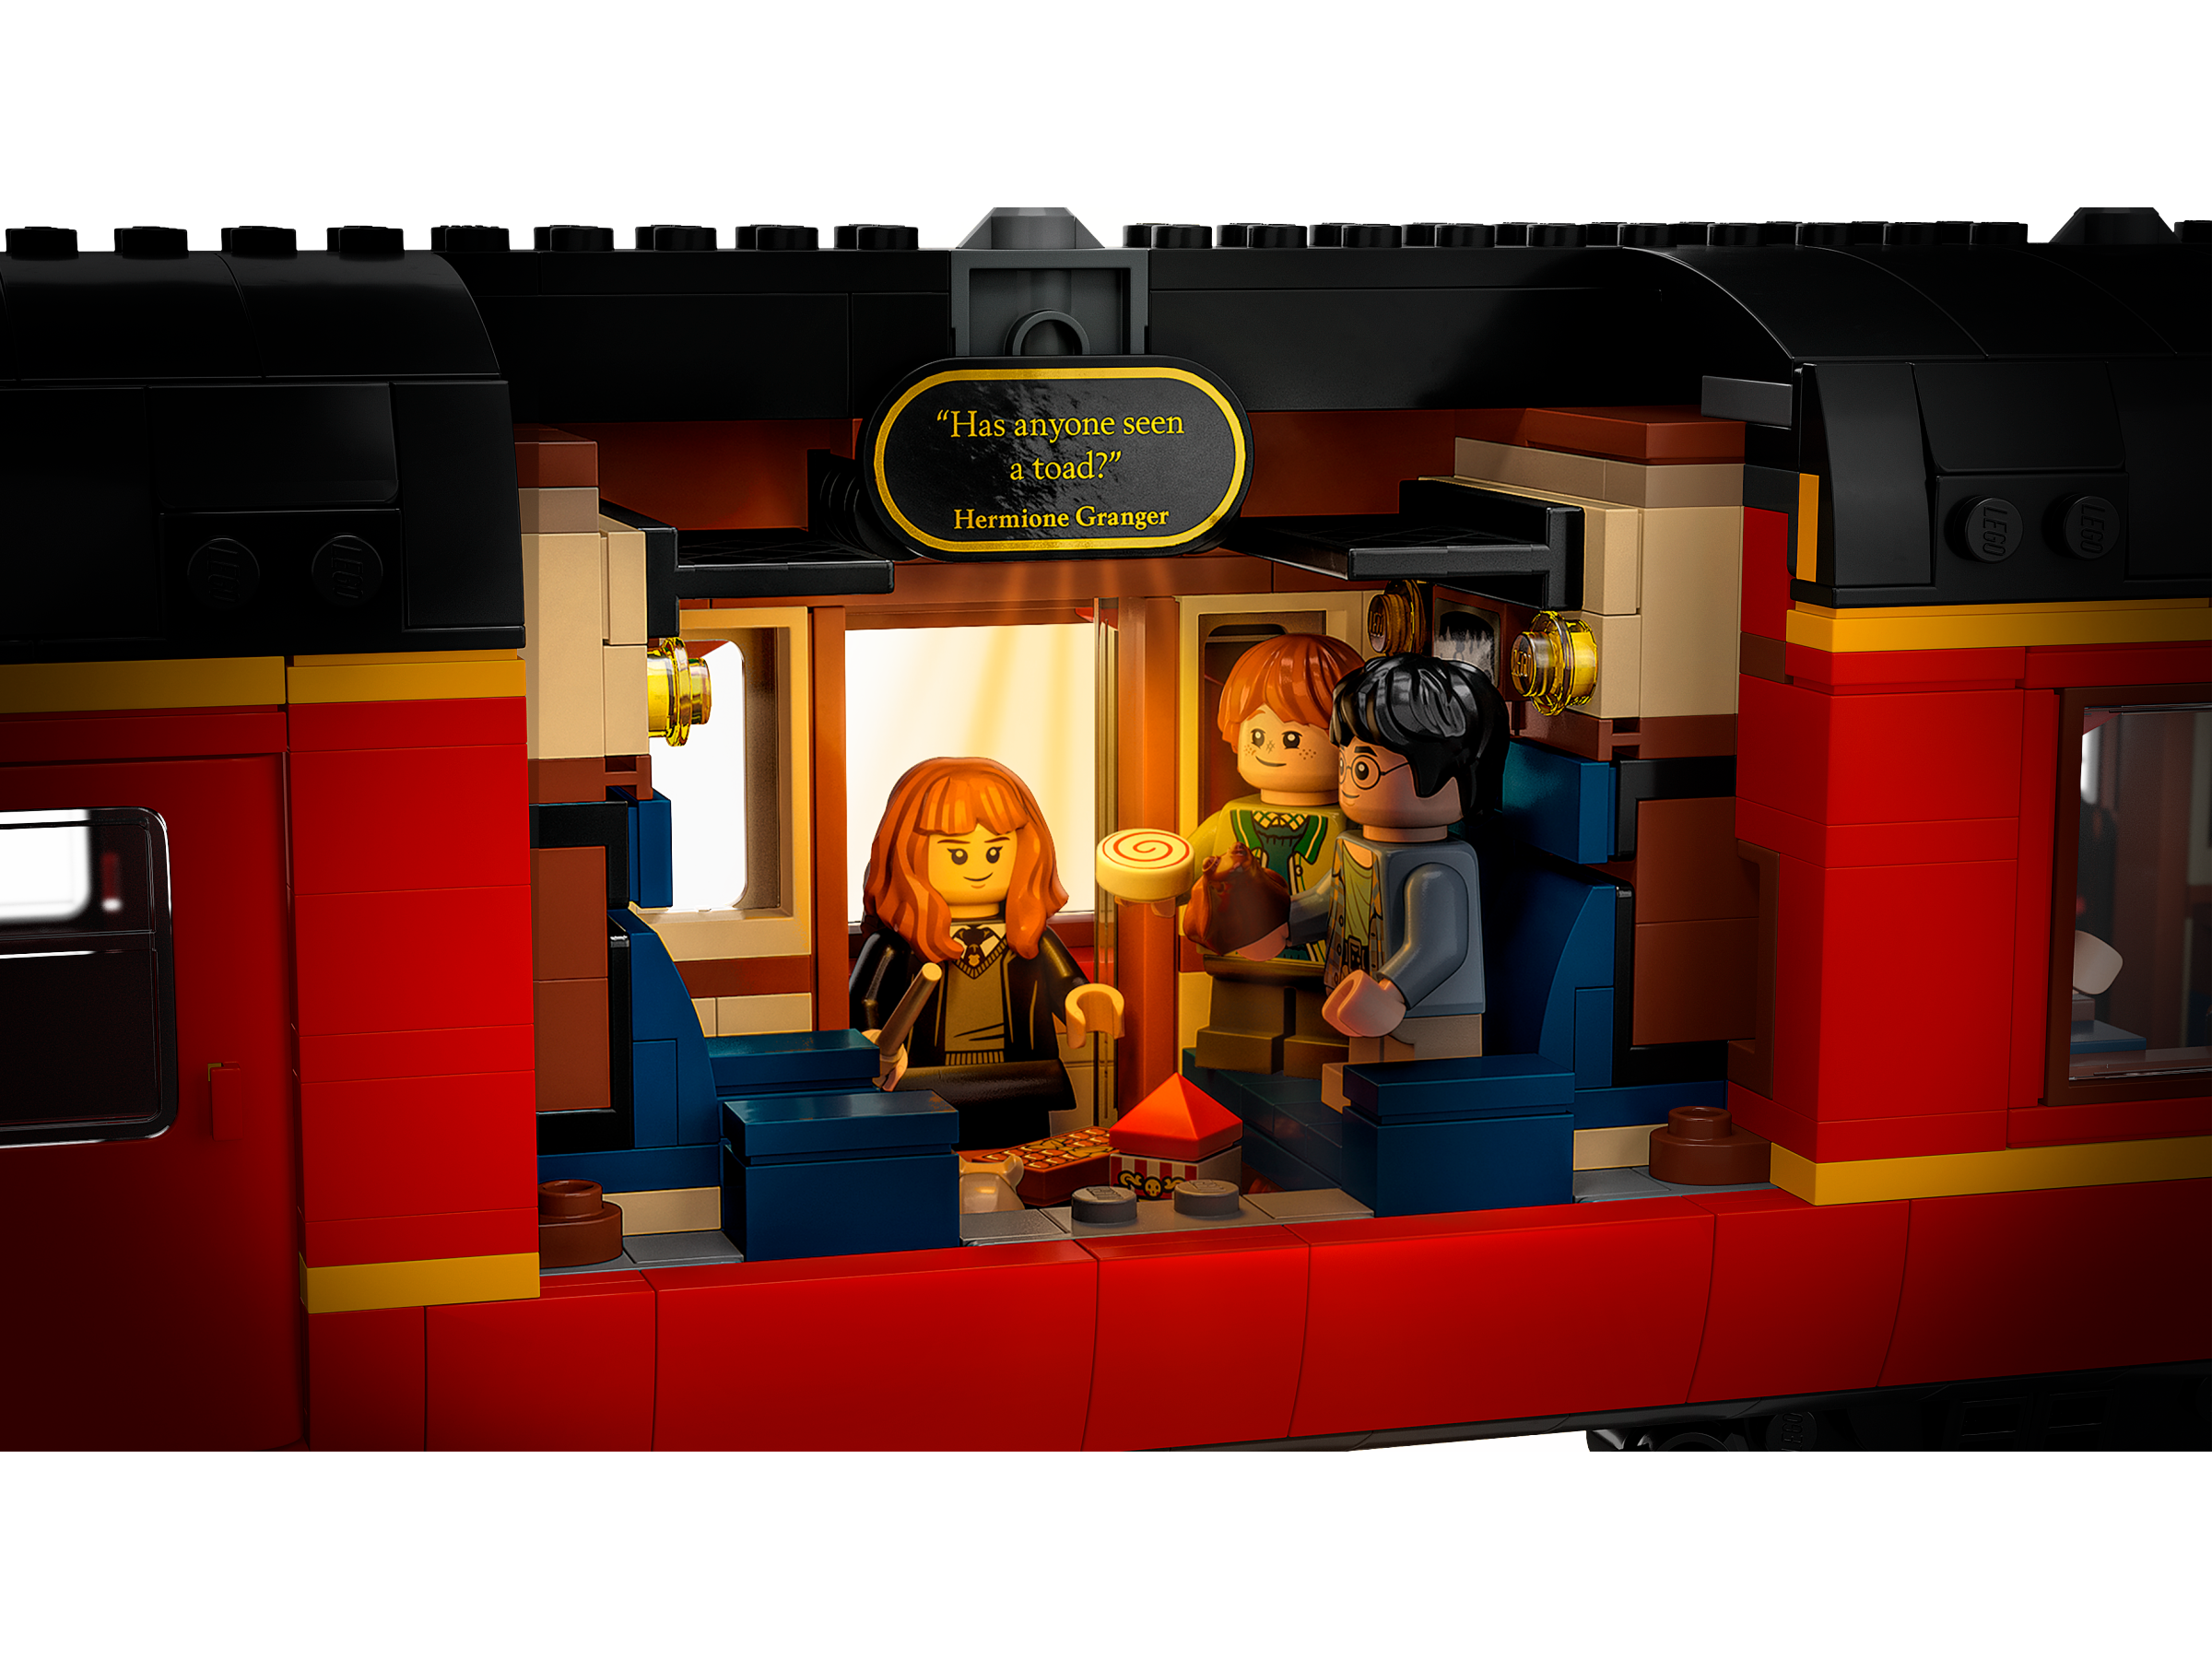 Mintinbox Open the Box] LEGO Harry Potter 76405 Hogwarts Express